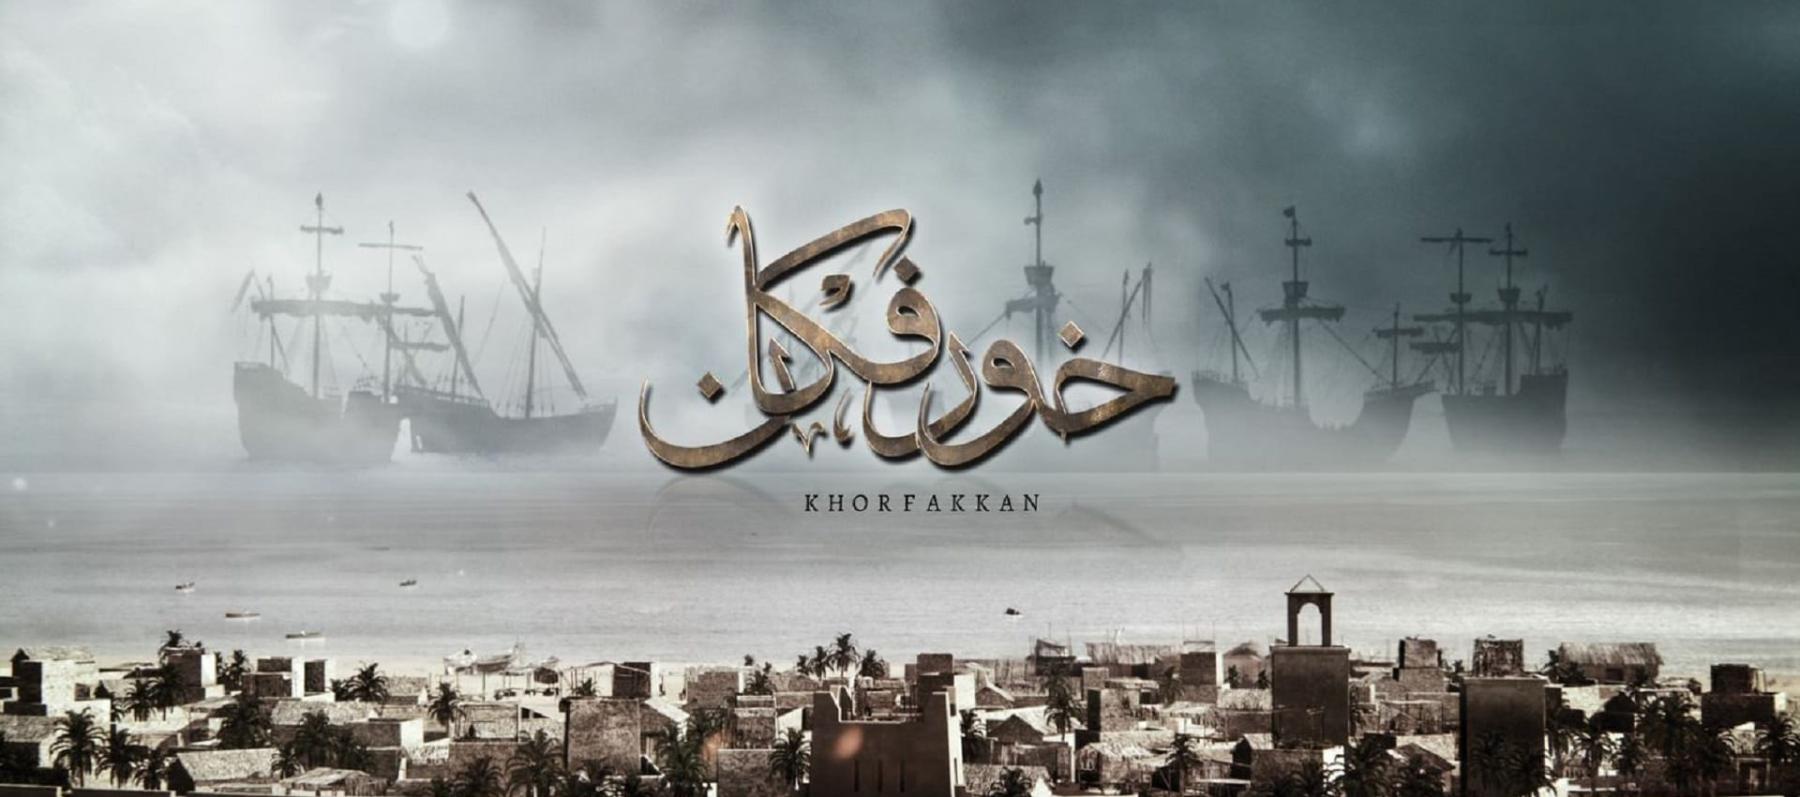 فيلم خورفكان يحصد 3 جوائز في أول مشاركة دولية